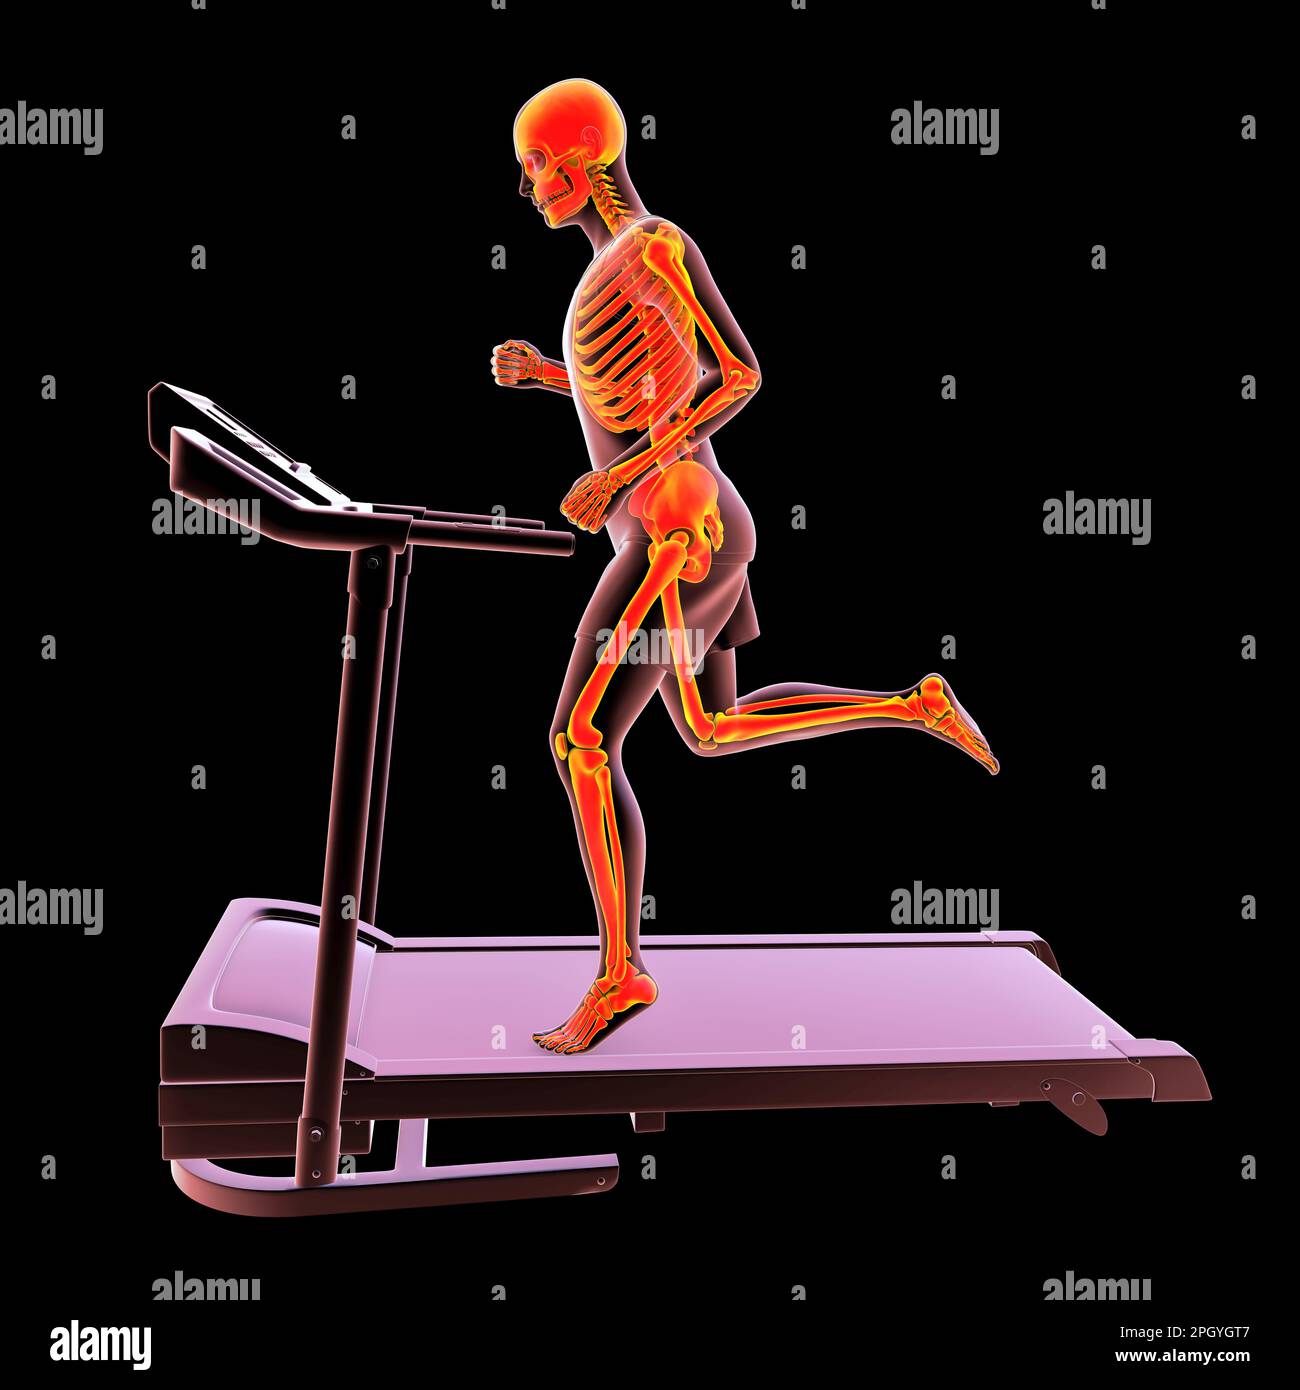 Squelette courant sur un tapis roulant, illustration Banque D'Images